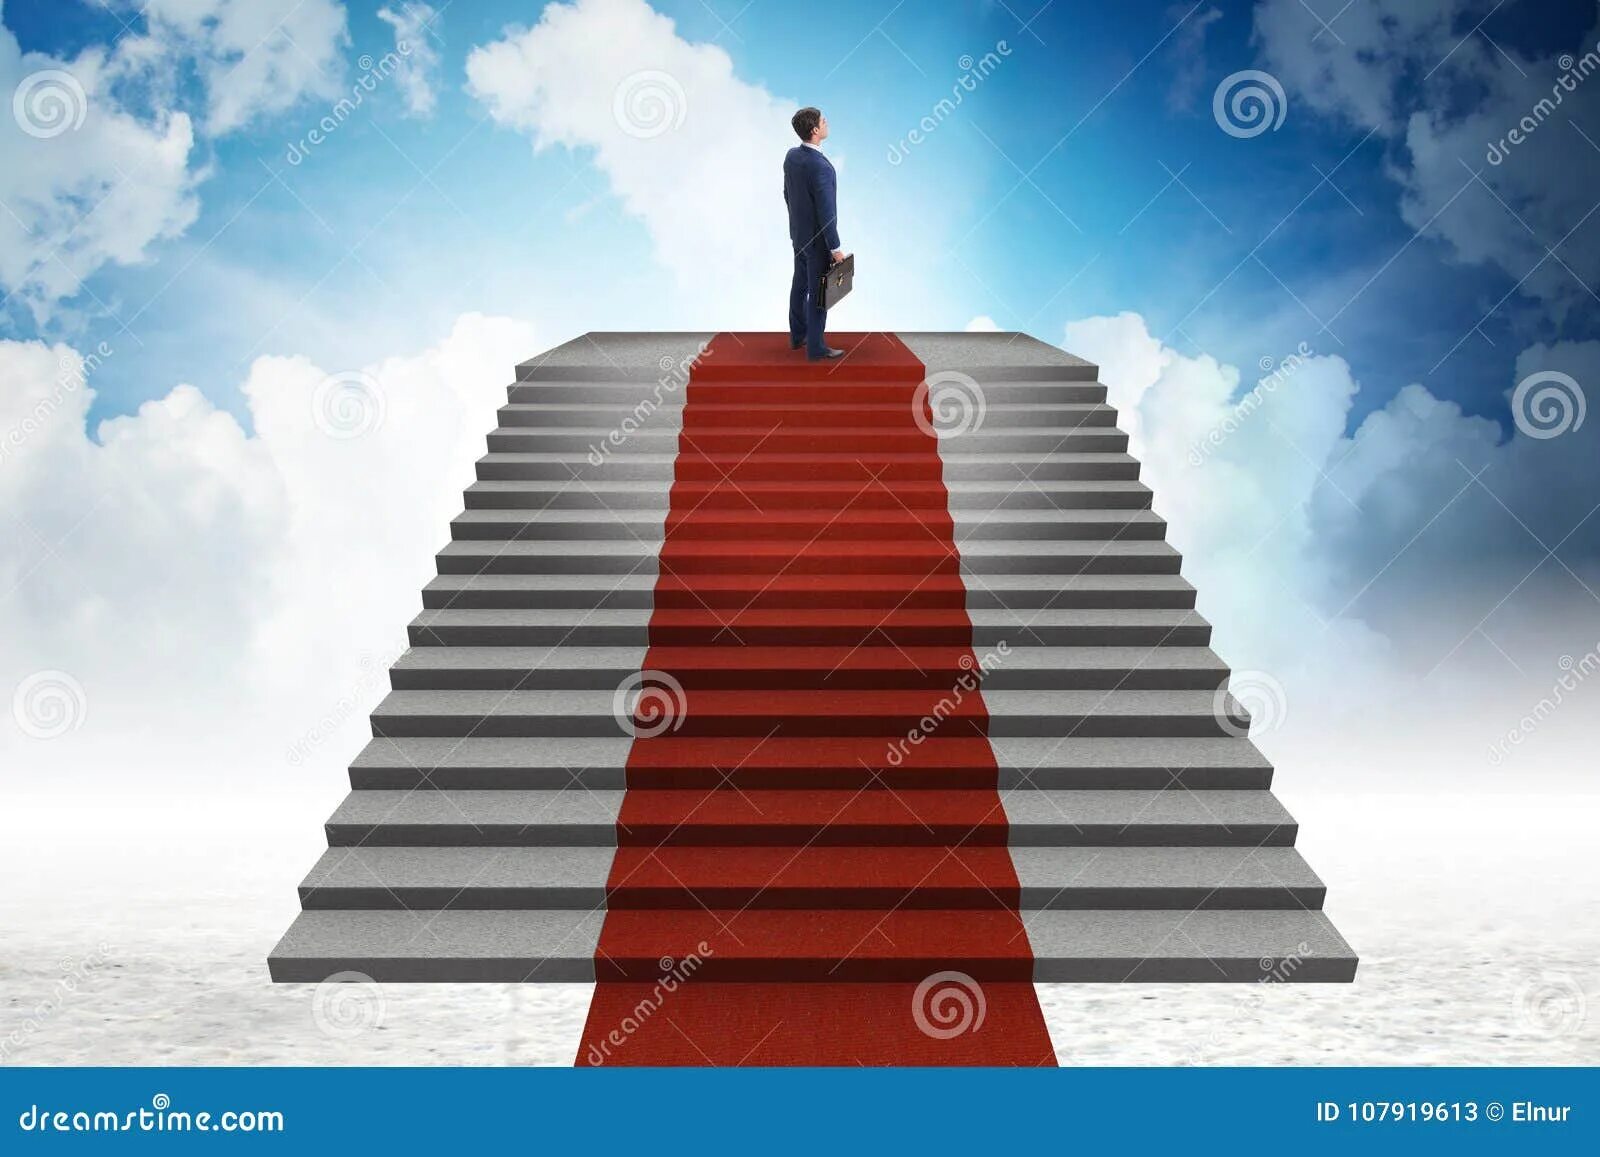 Подниматься по красной лестнице. Лестница с красной дорожкой. Красная лестница вверх. Красная дорожка со ступеньками.